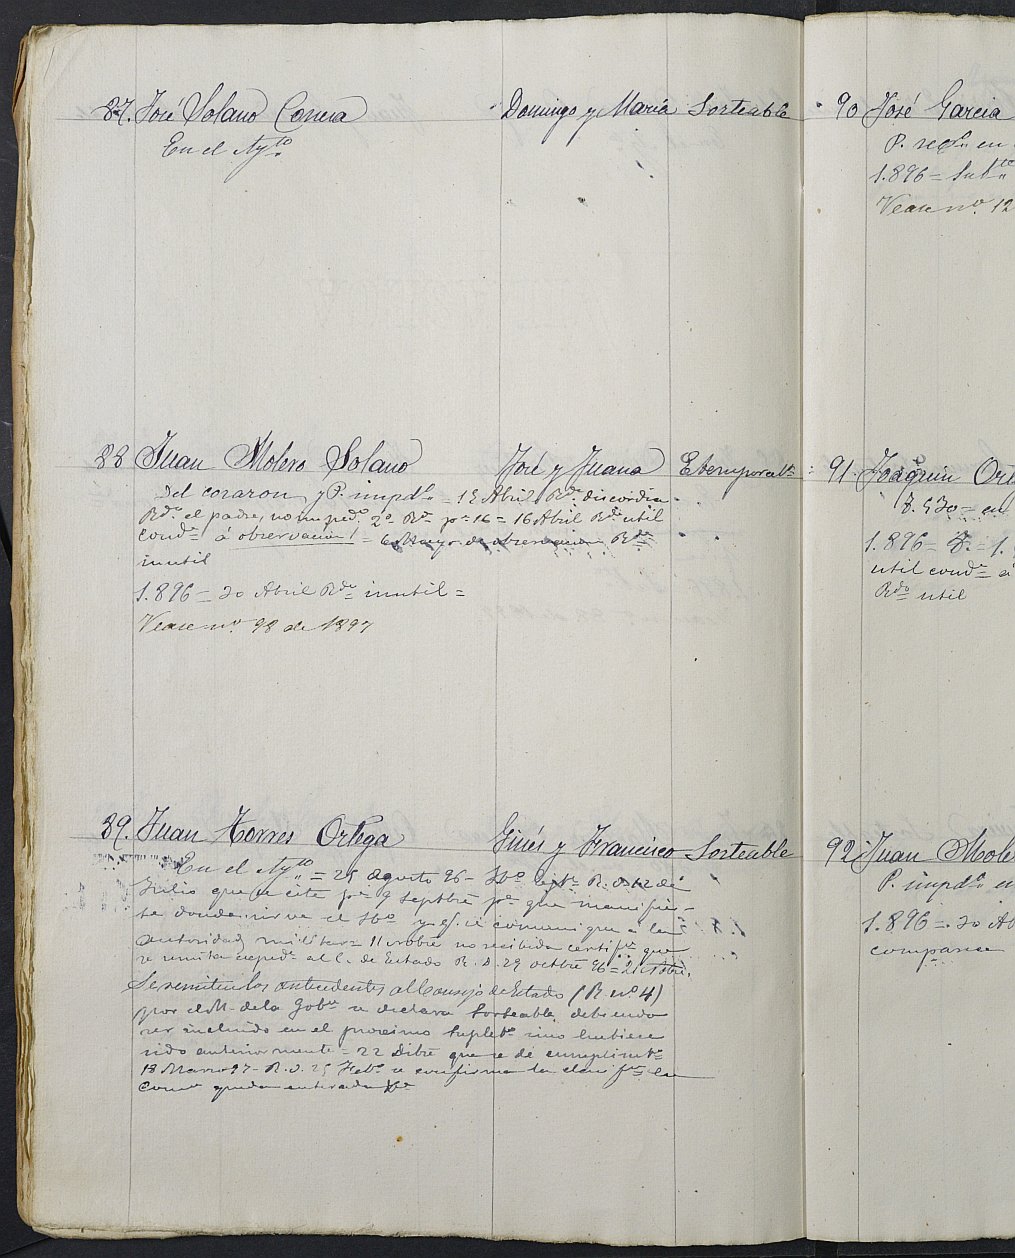 Relación de individuos declarados soldados e ingresados en Caja de la Sección 4ª del Ayuntamiento de Cartagena de 1895.